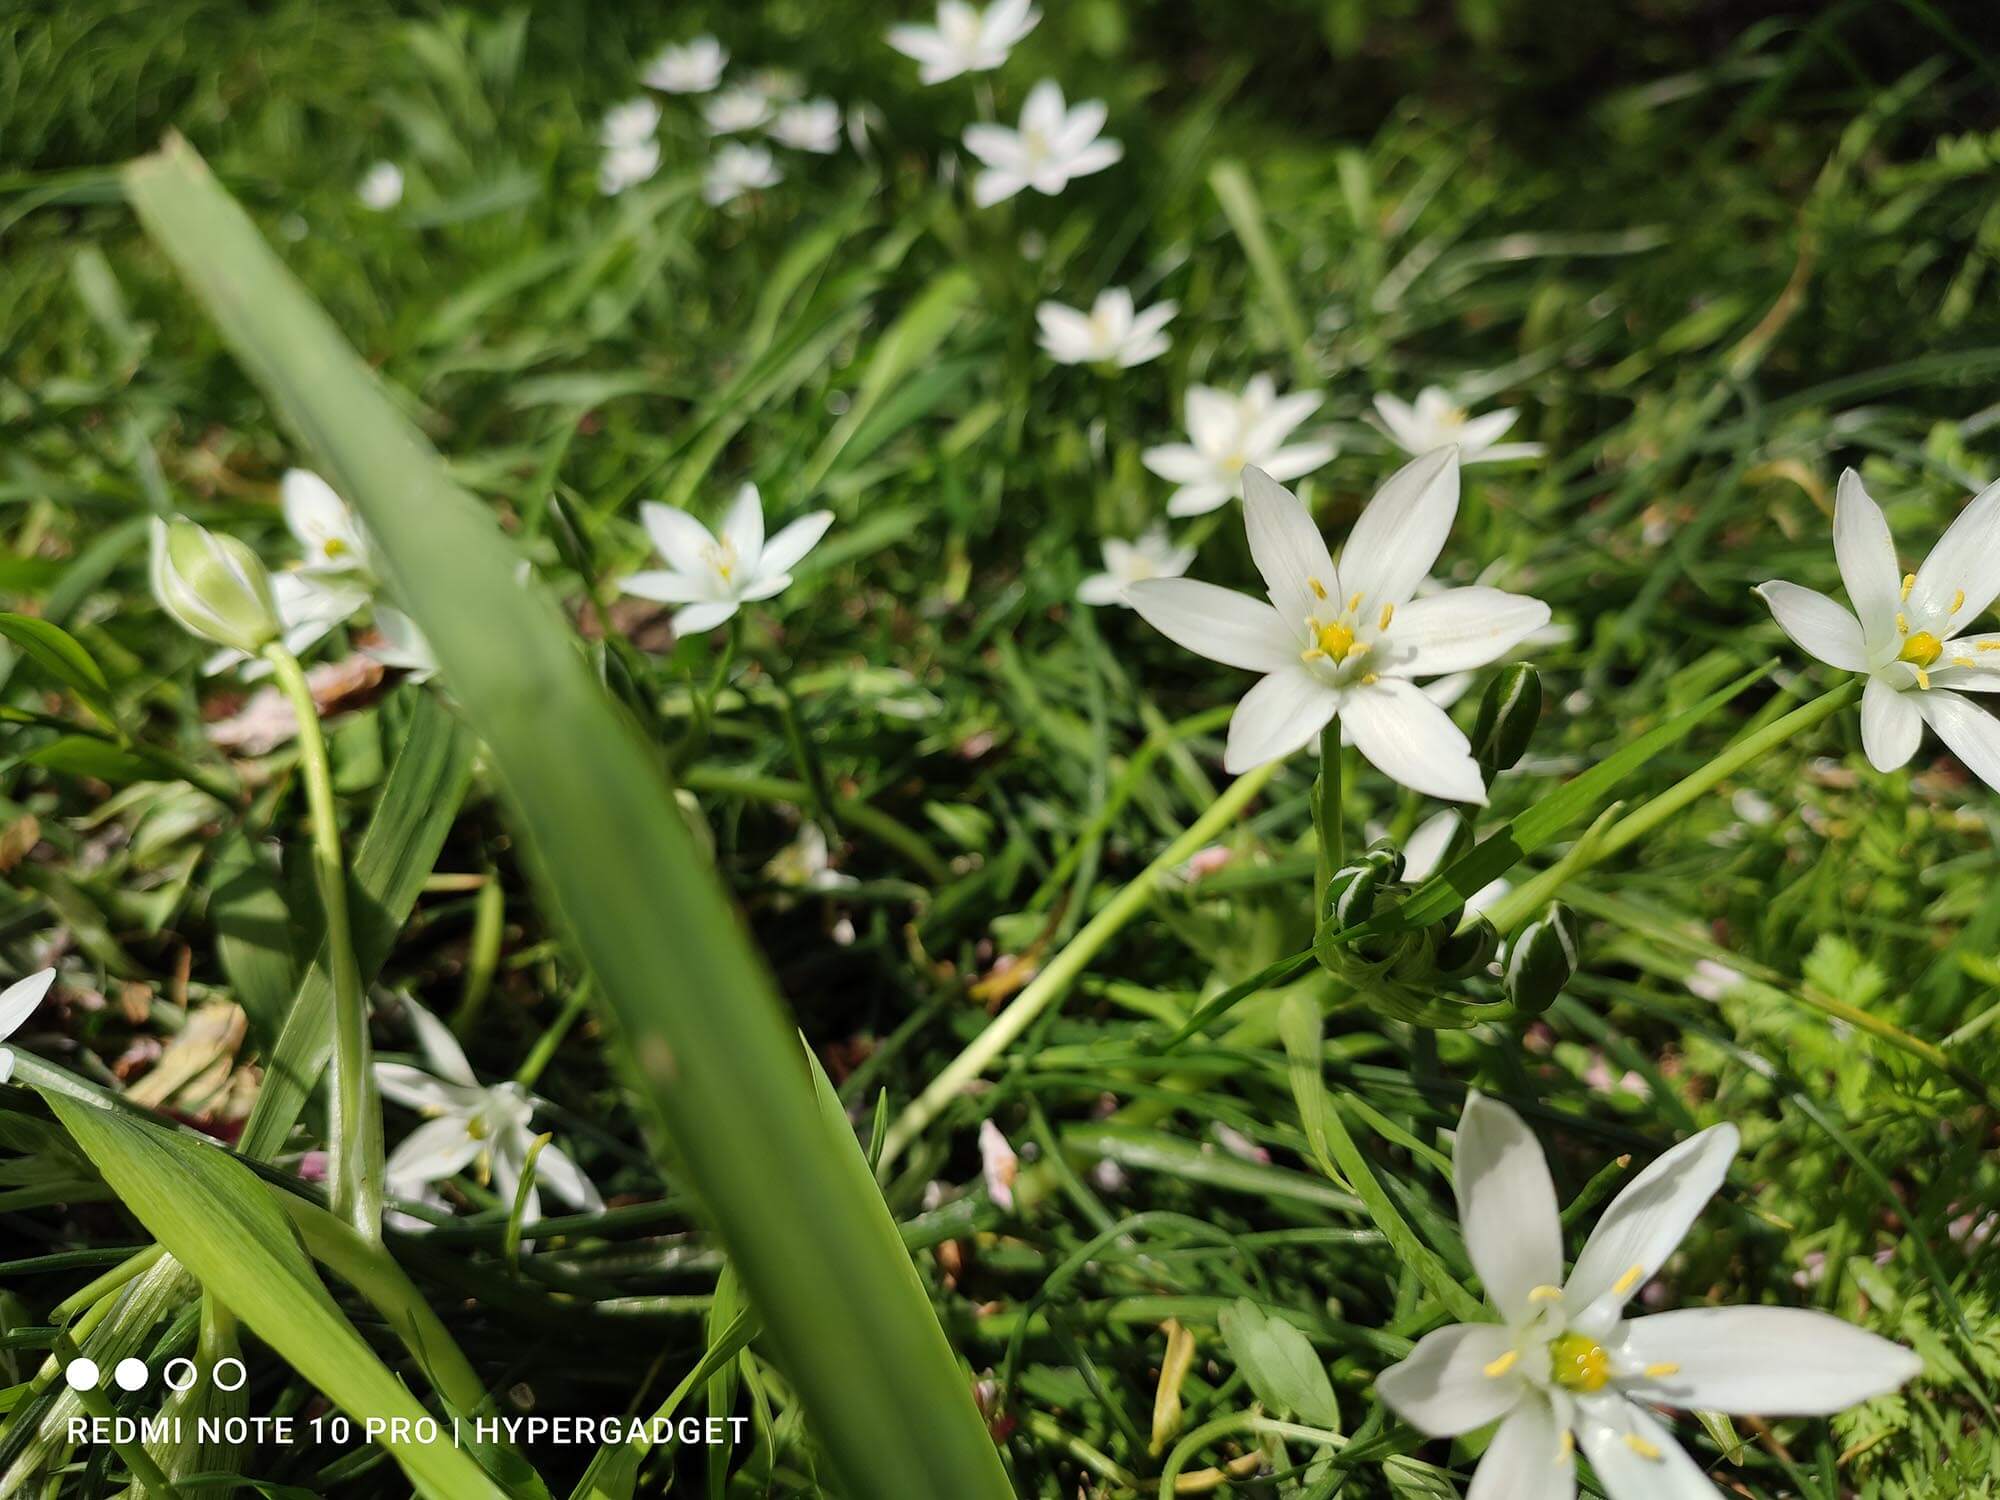 Redmi Note 10 Proで撮影した白い花の画像